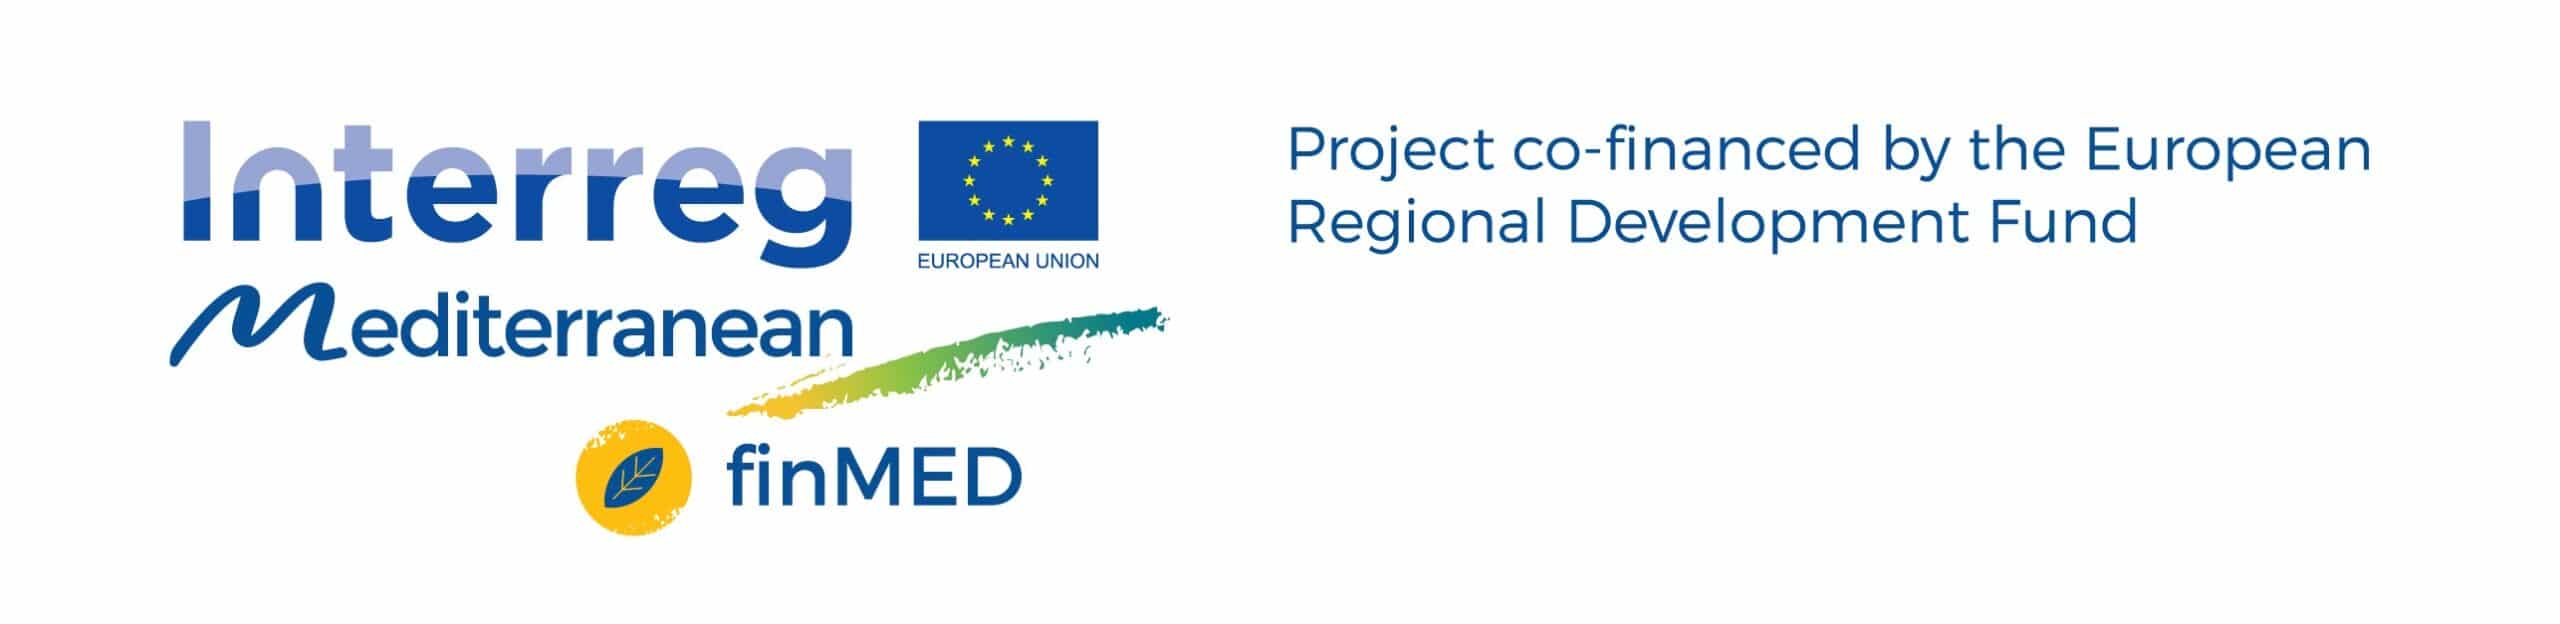 LOGO ERDF finMED En scaled finMED يهدف إلى زيادة التمويل للابتكار الأخضر